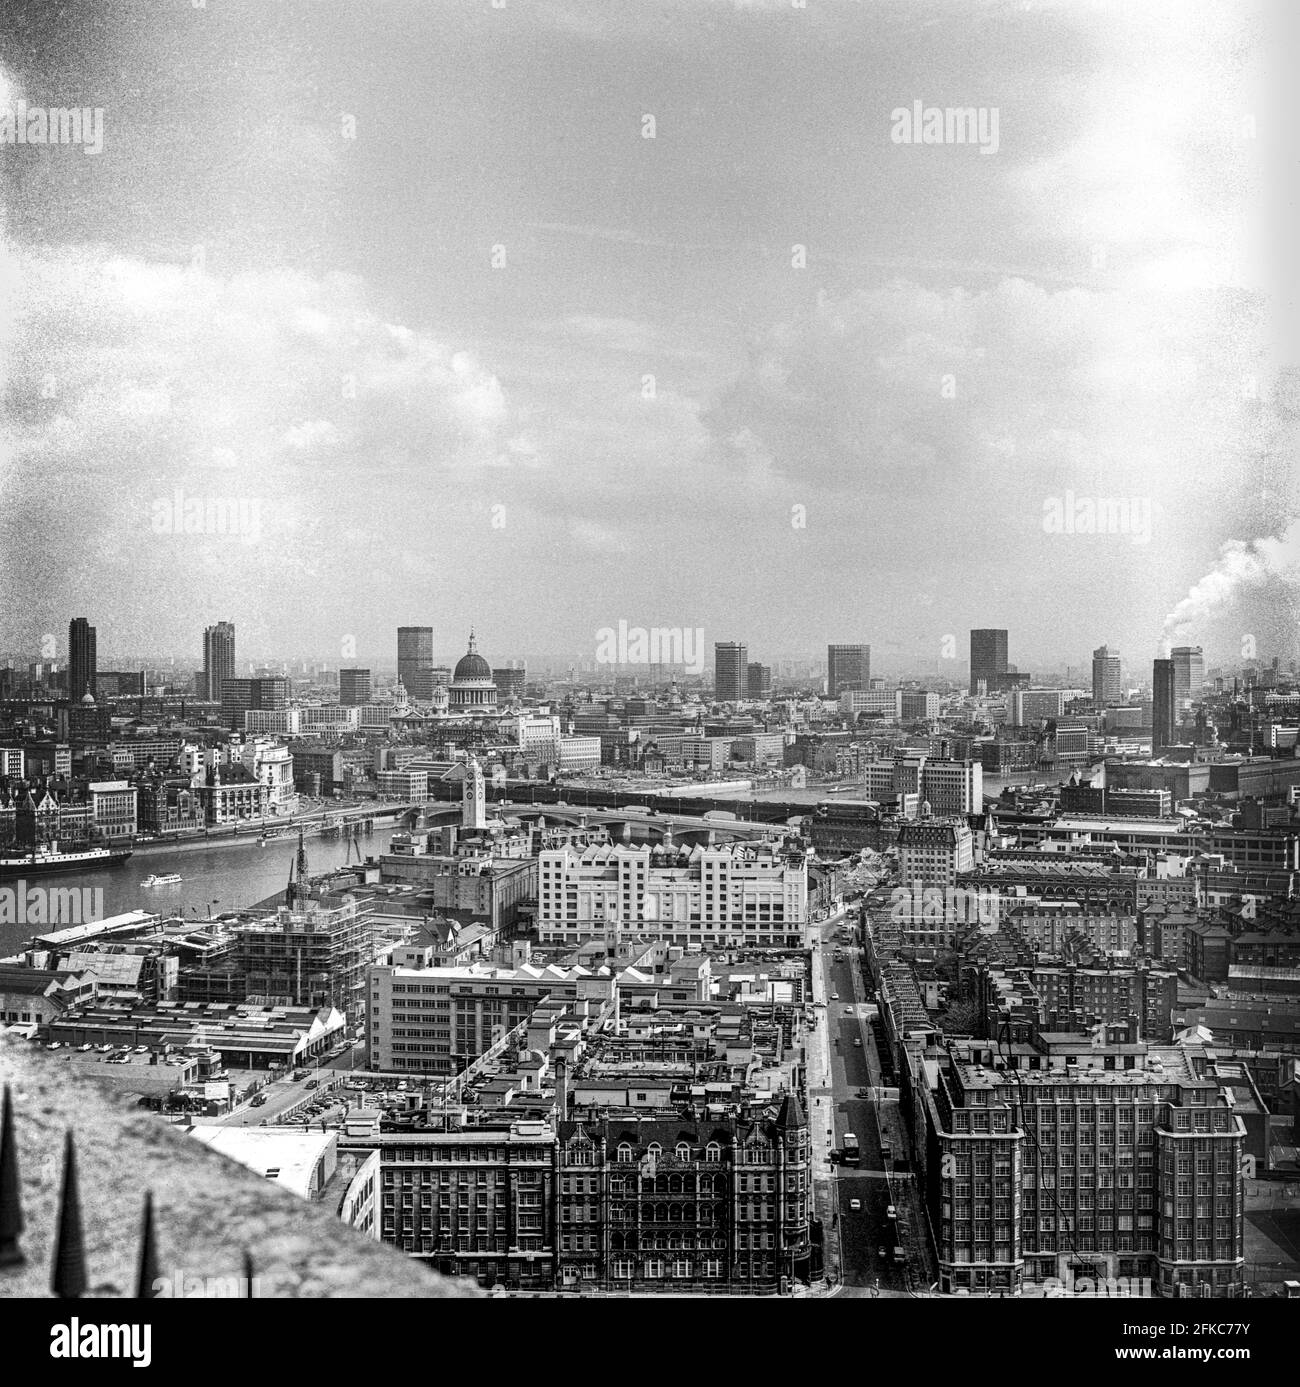 Vista del horizonte de la ciudad de Londres desde el Shell Center, Londres, Reino Unido - tomada en 1971 Foto de stock